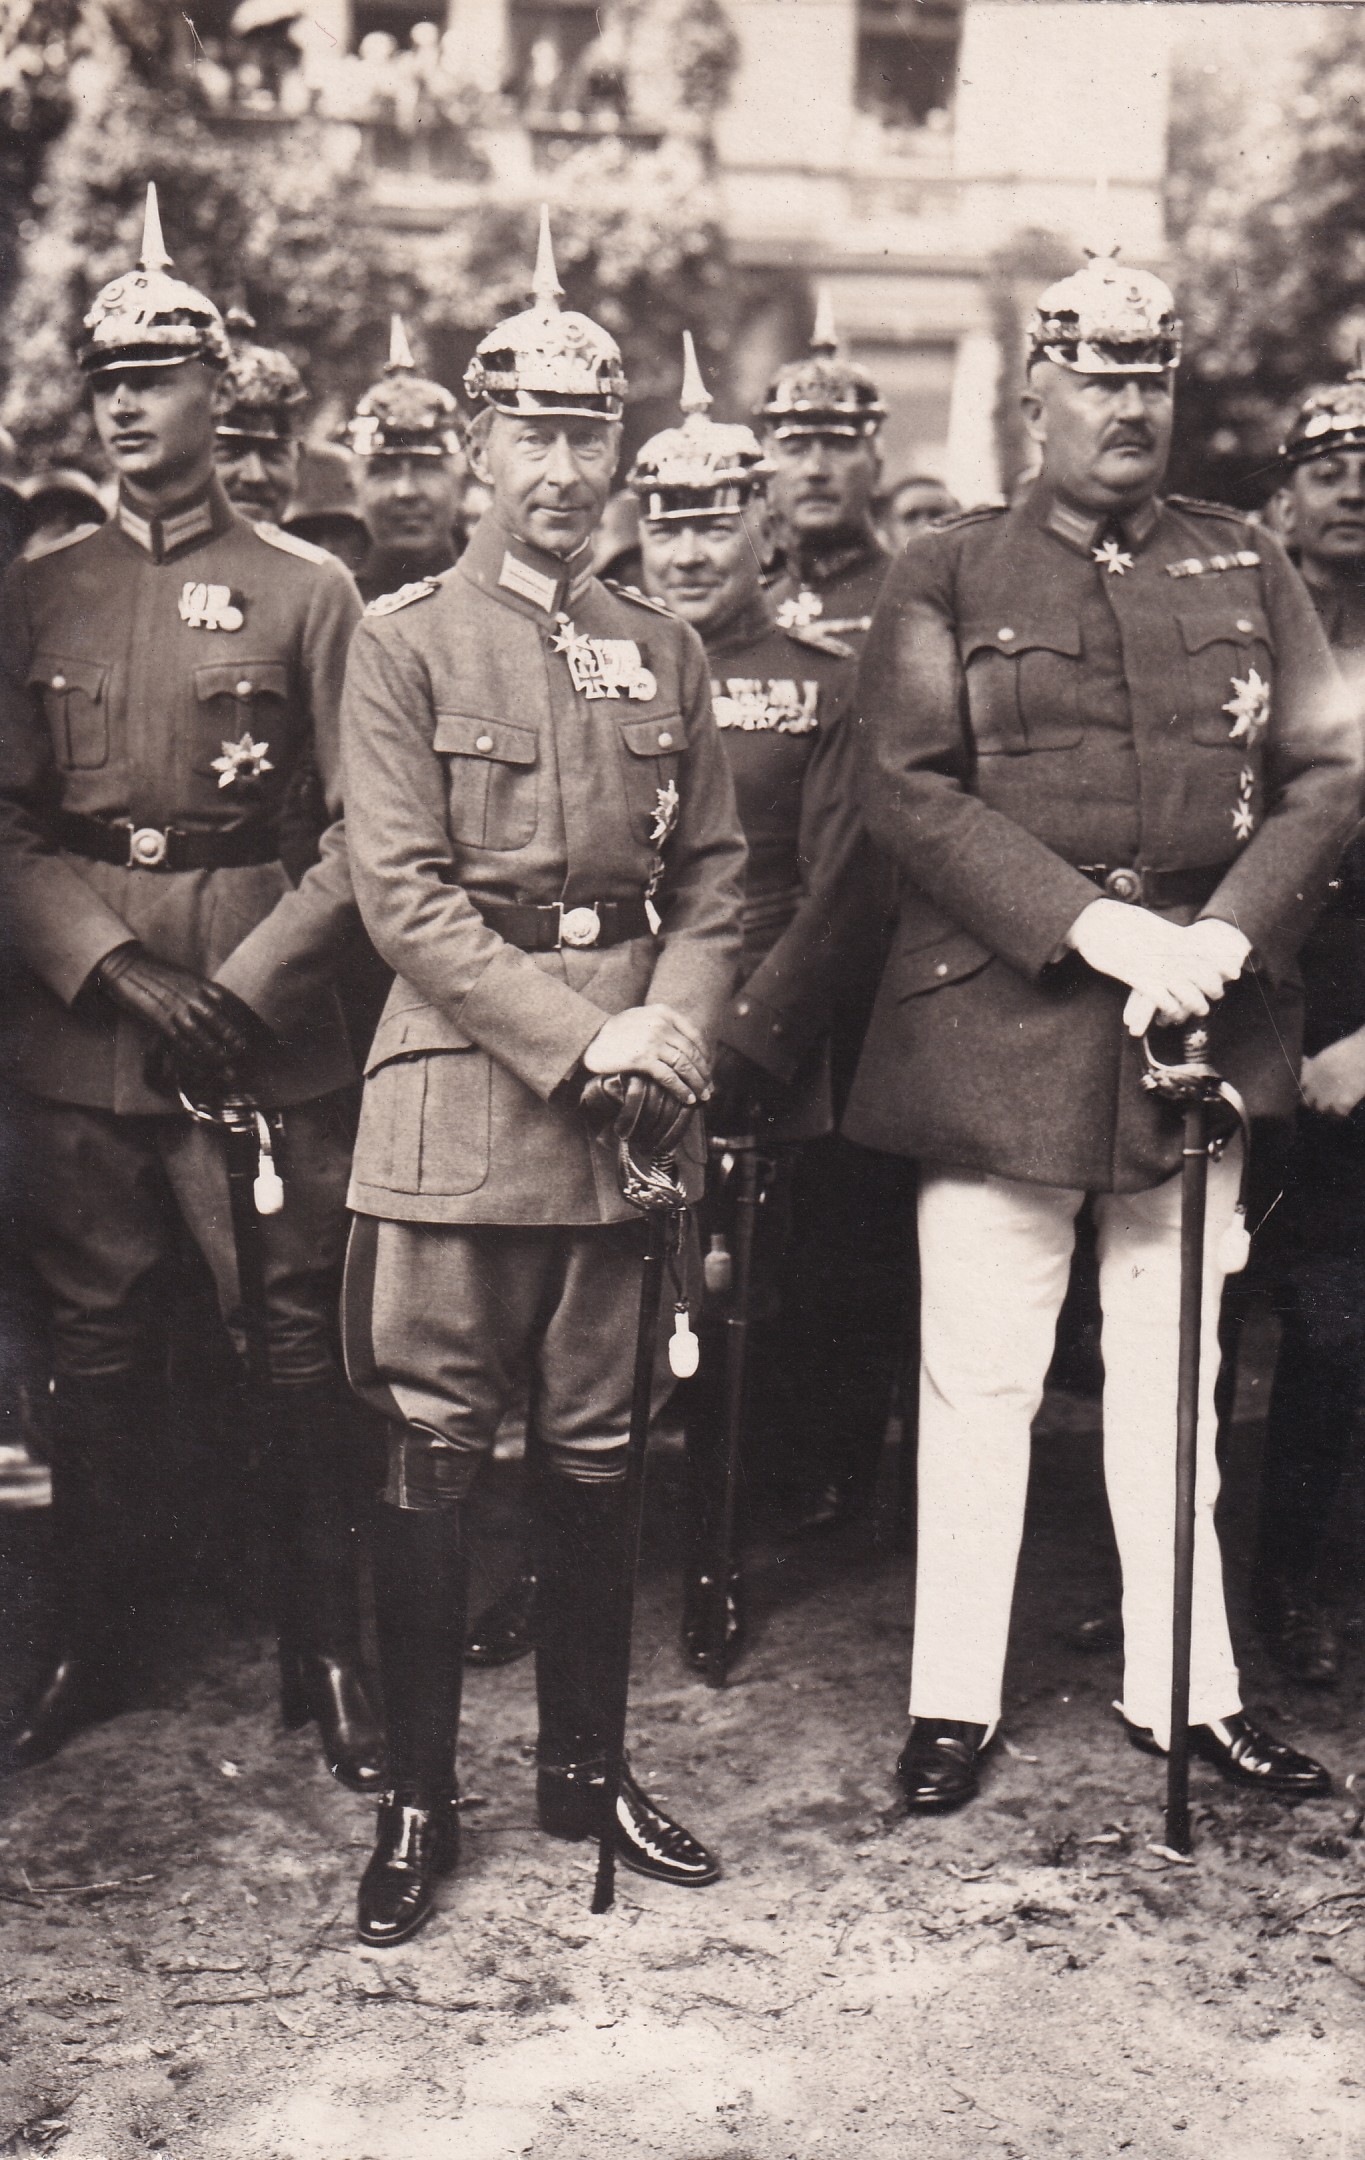 Bildpostkarte mit Foto des Kronprinzen Wilhelm und weiteren Militärs, um 1925 (Schloß Wernigerode GmbH RR-F)